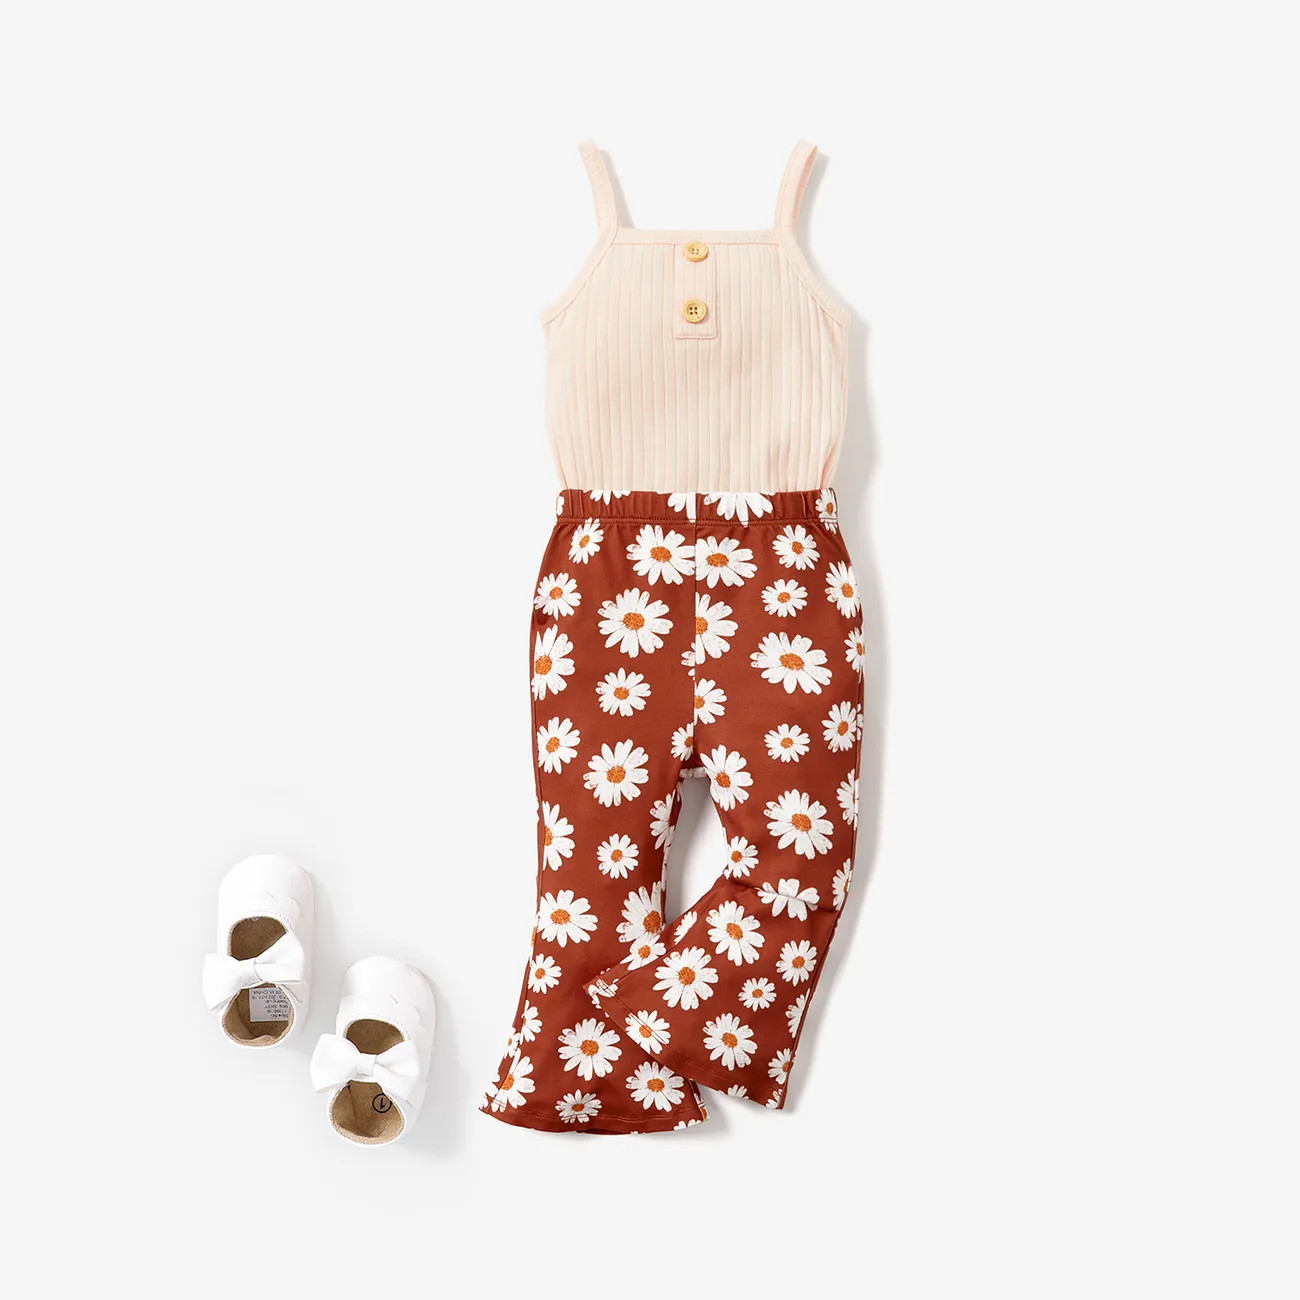 2 قطعة رومبير مضلع بحزام سباغيتي للفتيات الصغيرات ومجموعة سروال واسع بطبعة زهور الأقحوان مشمش big image 1